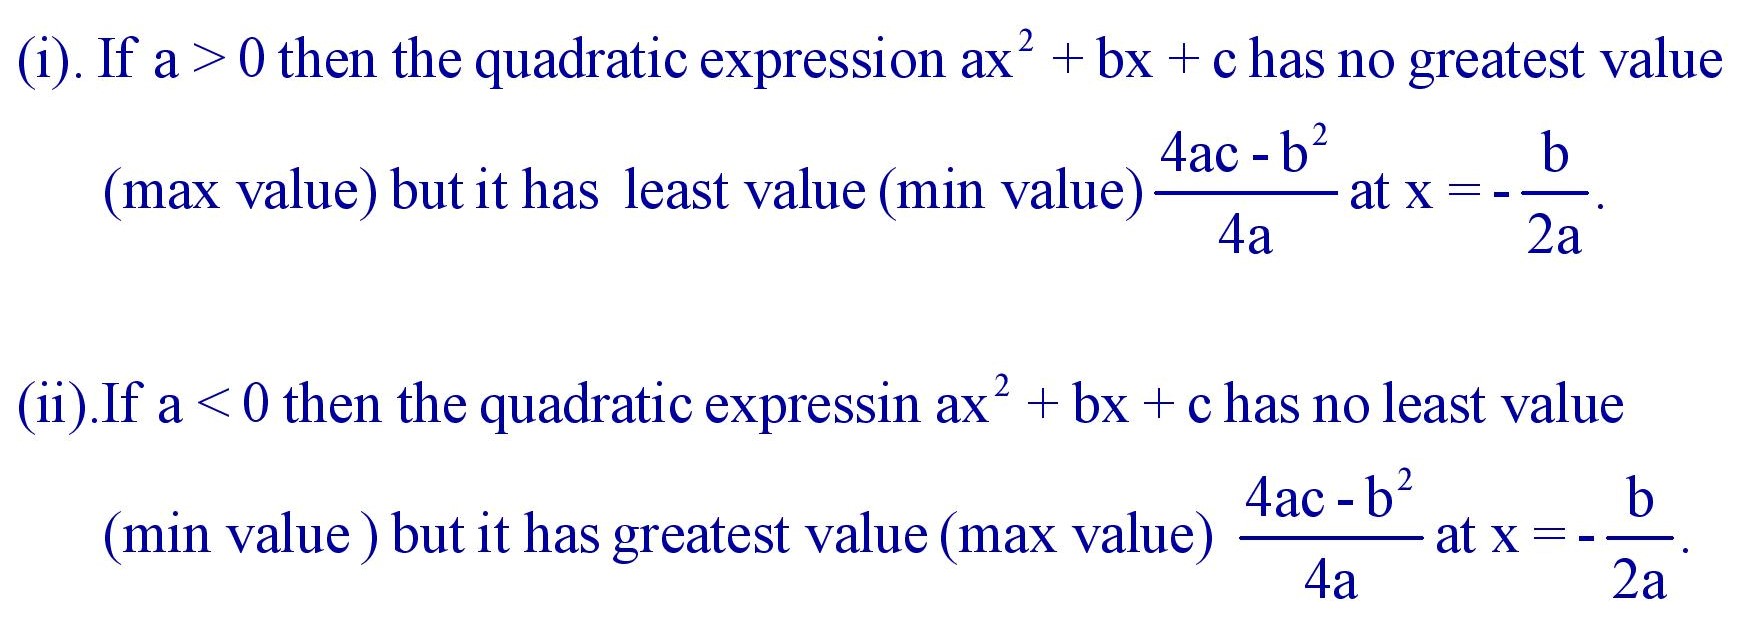 Maximum and minimum values of ax2 + bx + c = 0